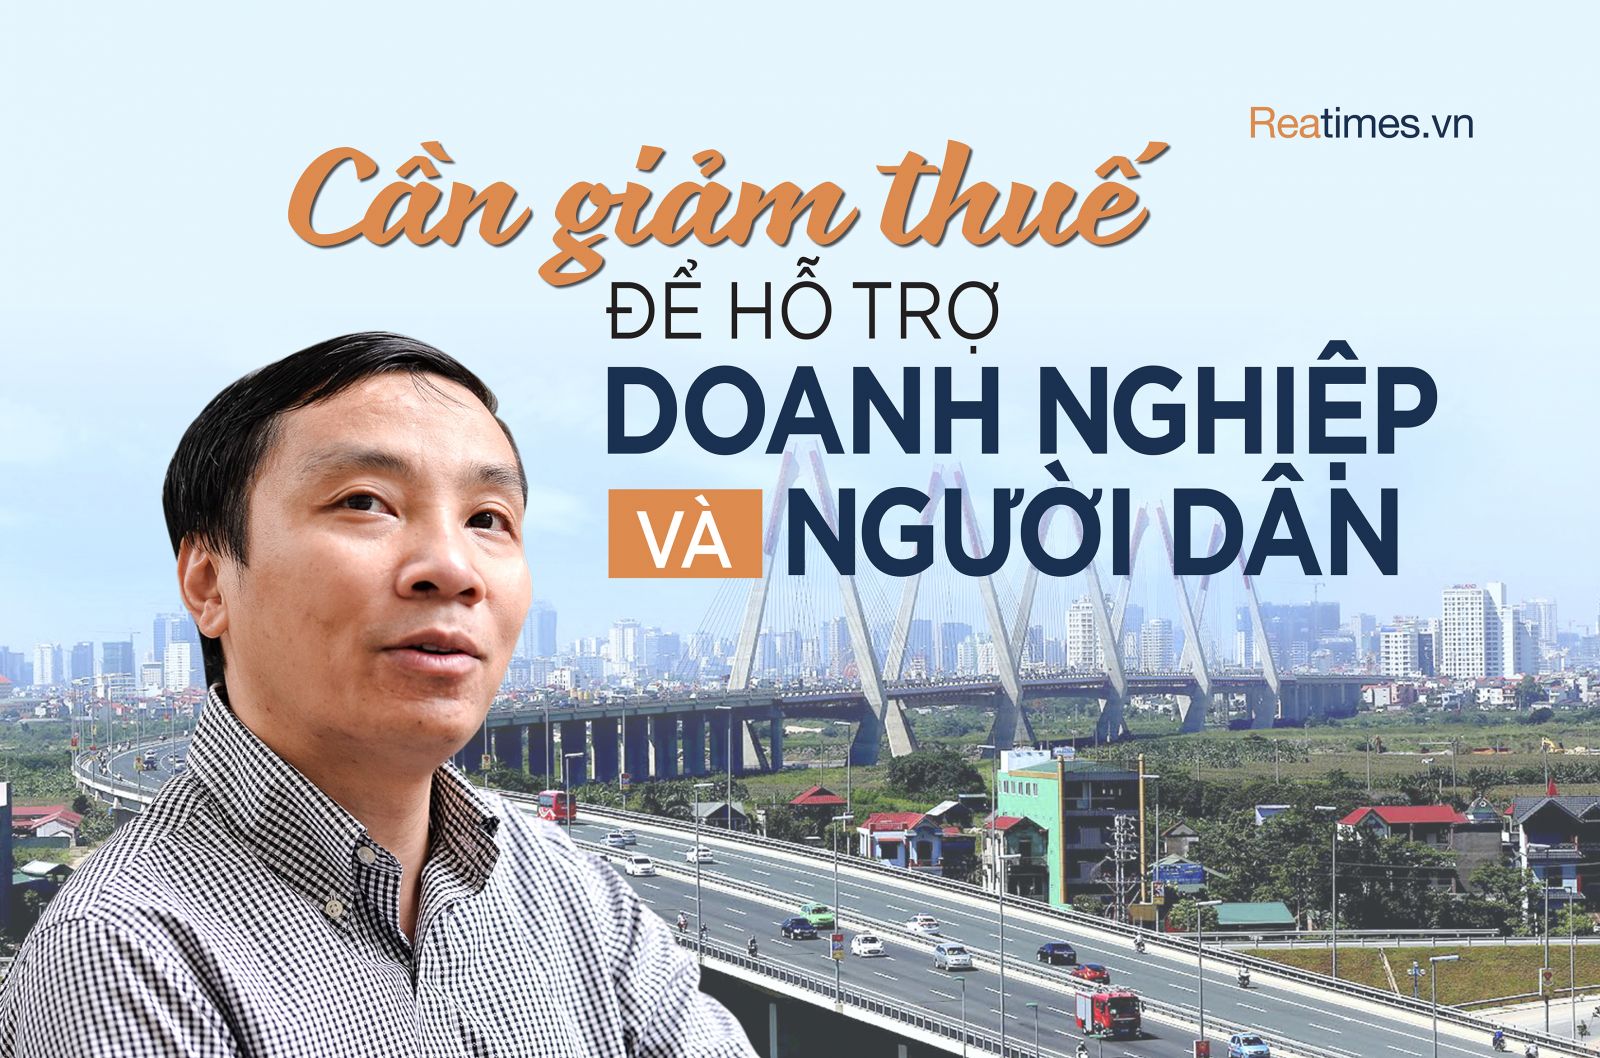 PGS.TS Phạm Thế Anh: “Nền kinh tế Việt Nam lúc này rất cần chính sách tài khóa nghịch chu kỳ“